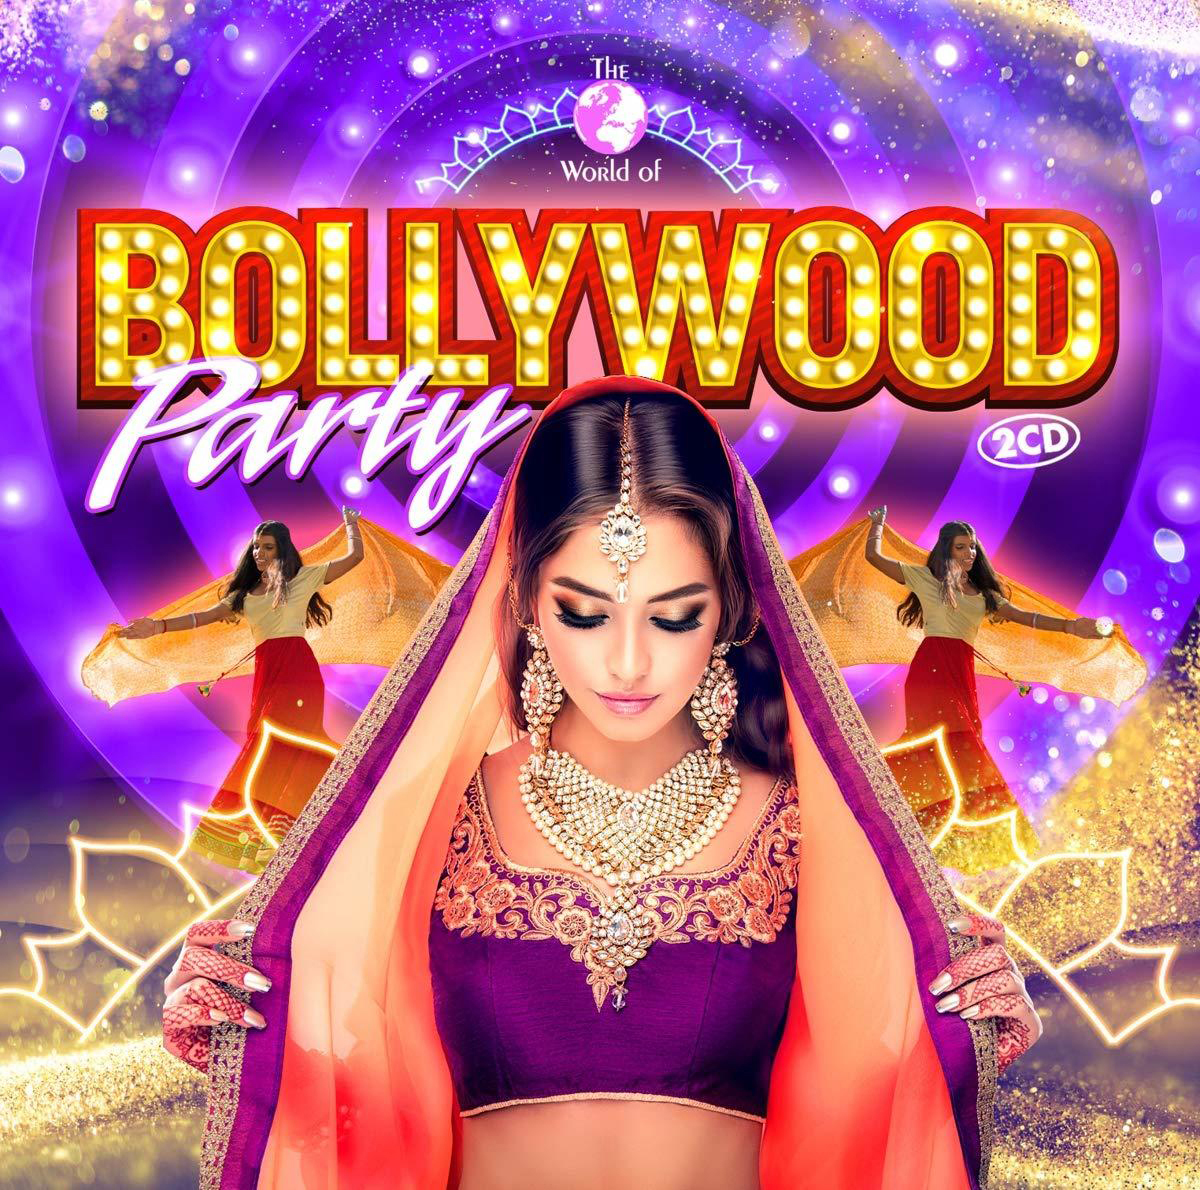 VARIOUS - Bollywood (CD) - Party